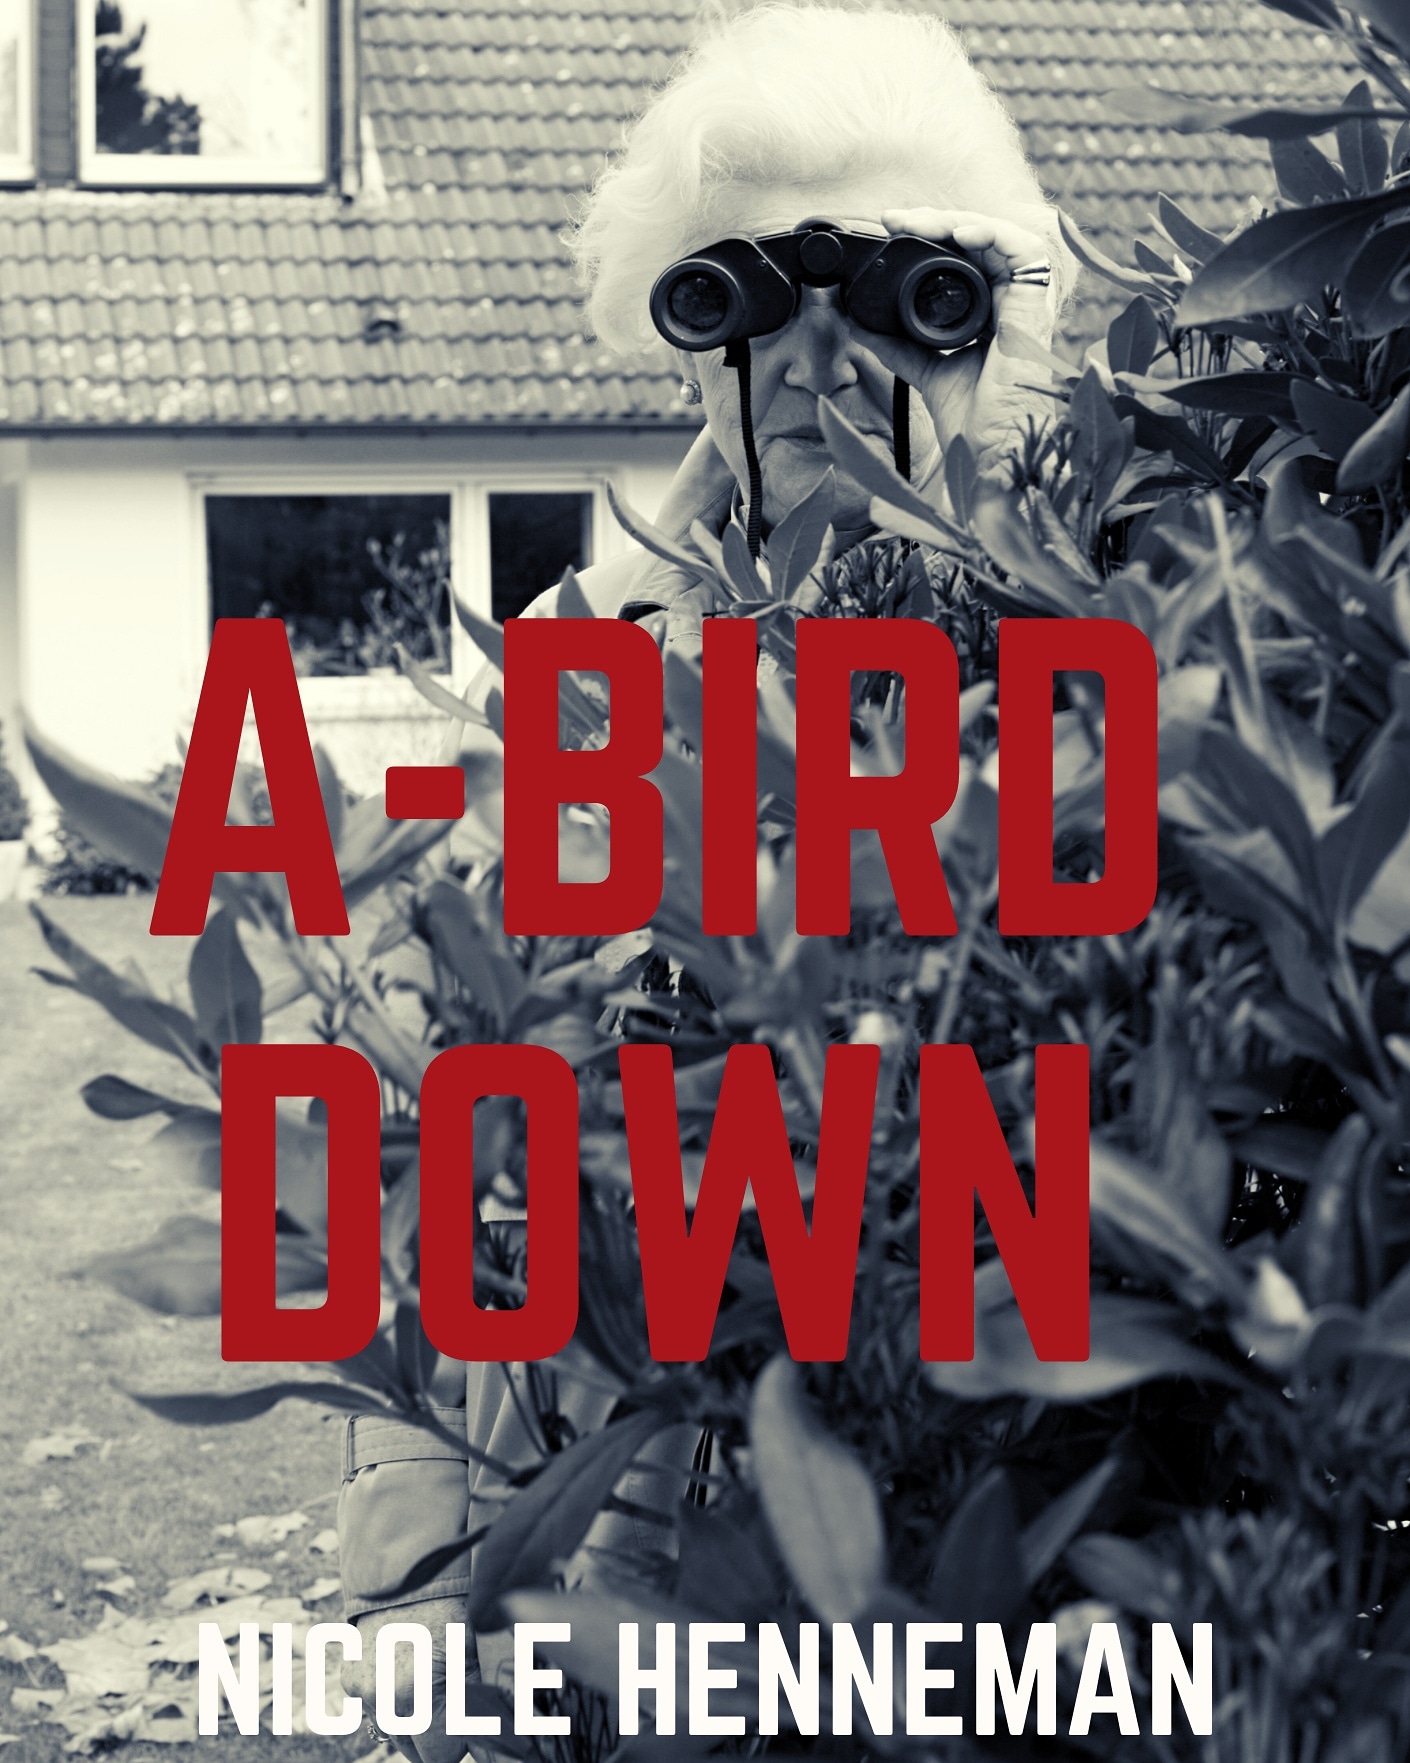 A-Bird Down